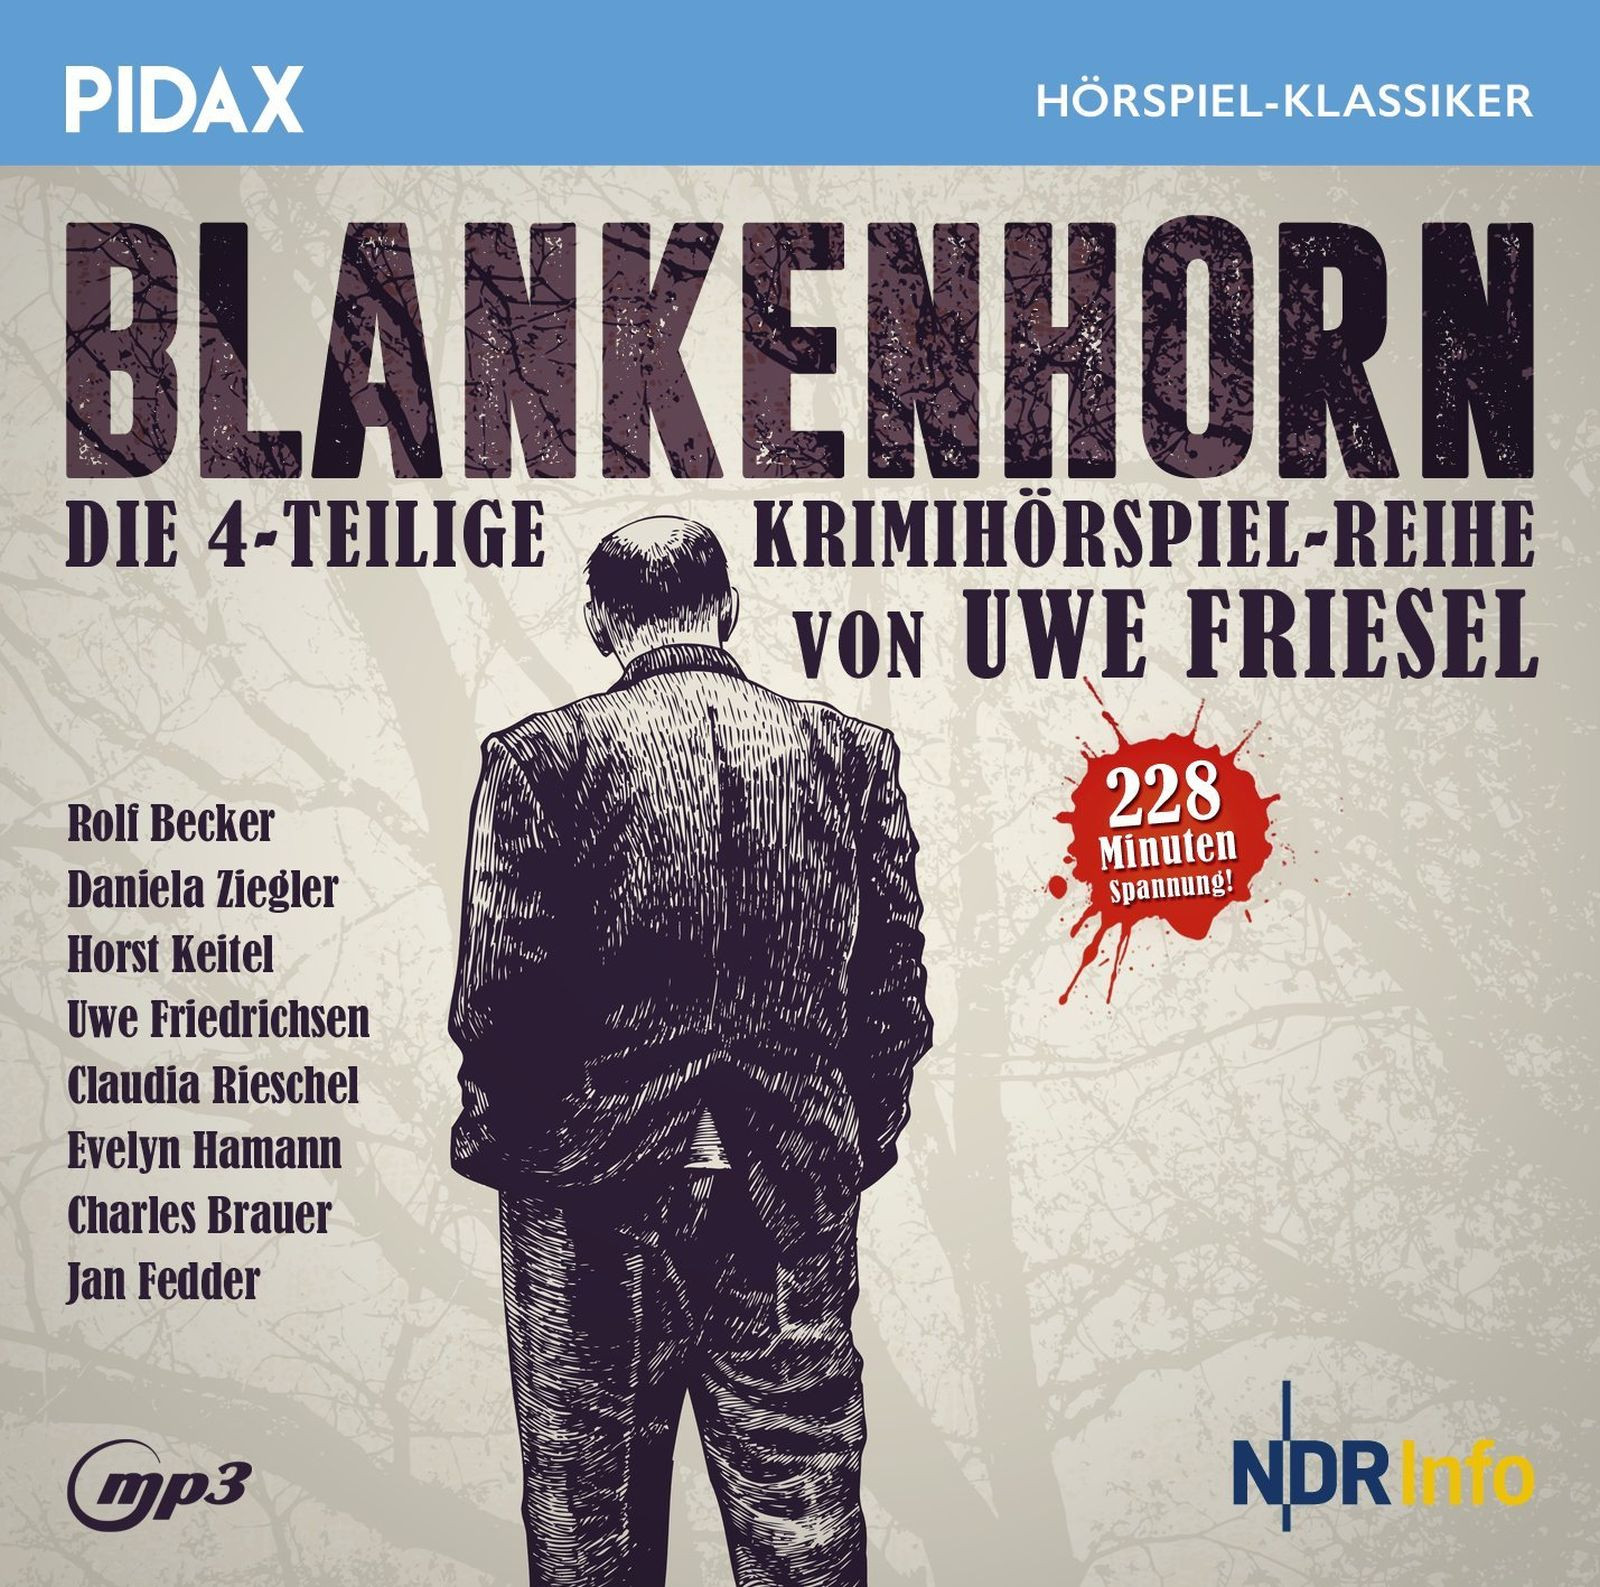 Pidax Hörspiel Klassiker - Blankenhorn